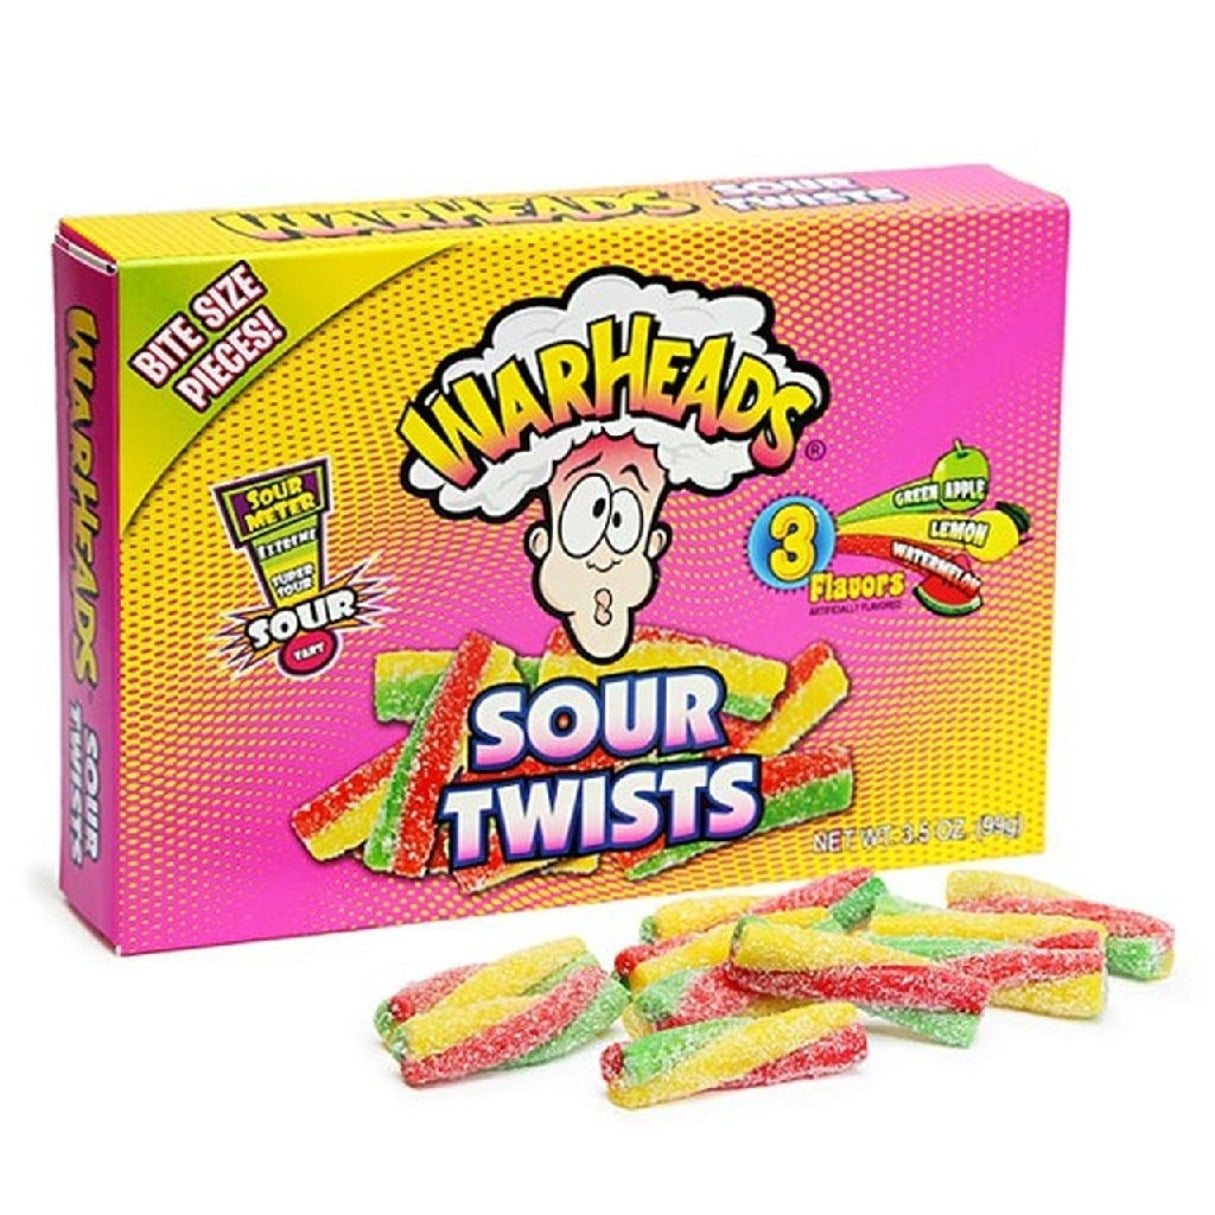 Warheads Sour Twists Box 3.5oz - 12ct